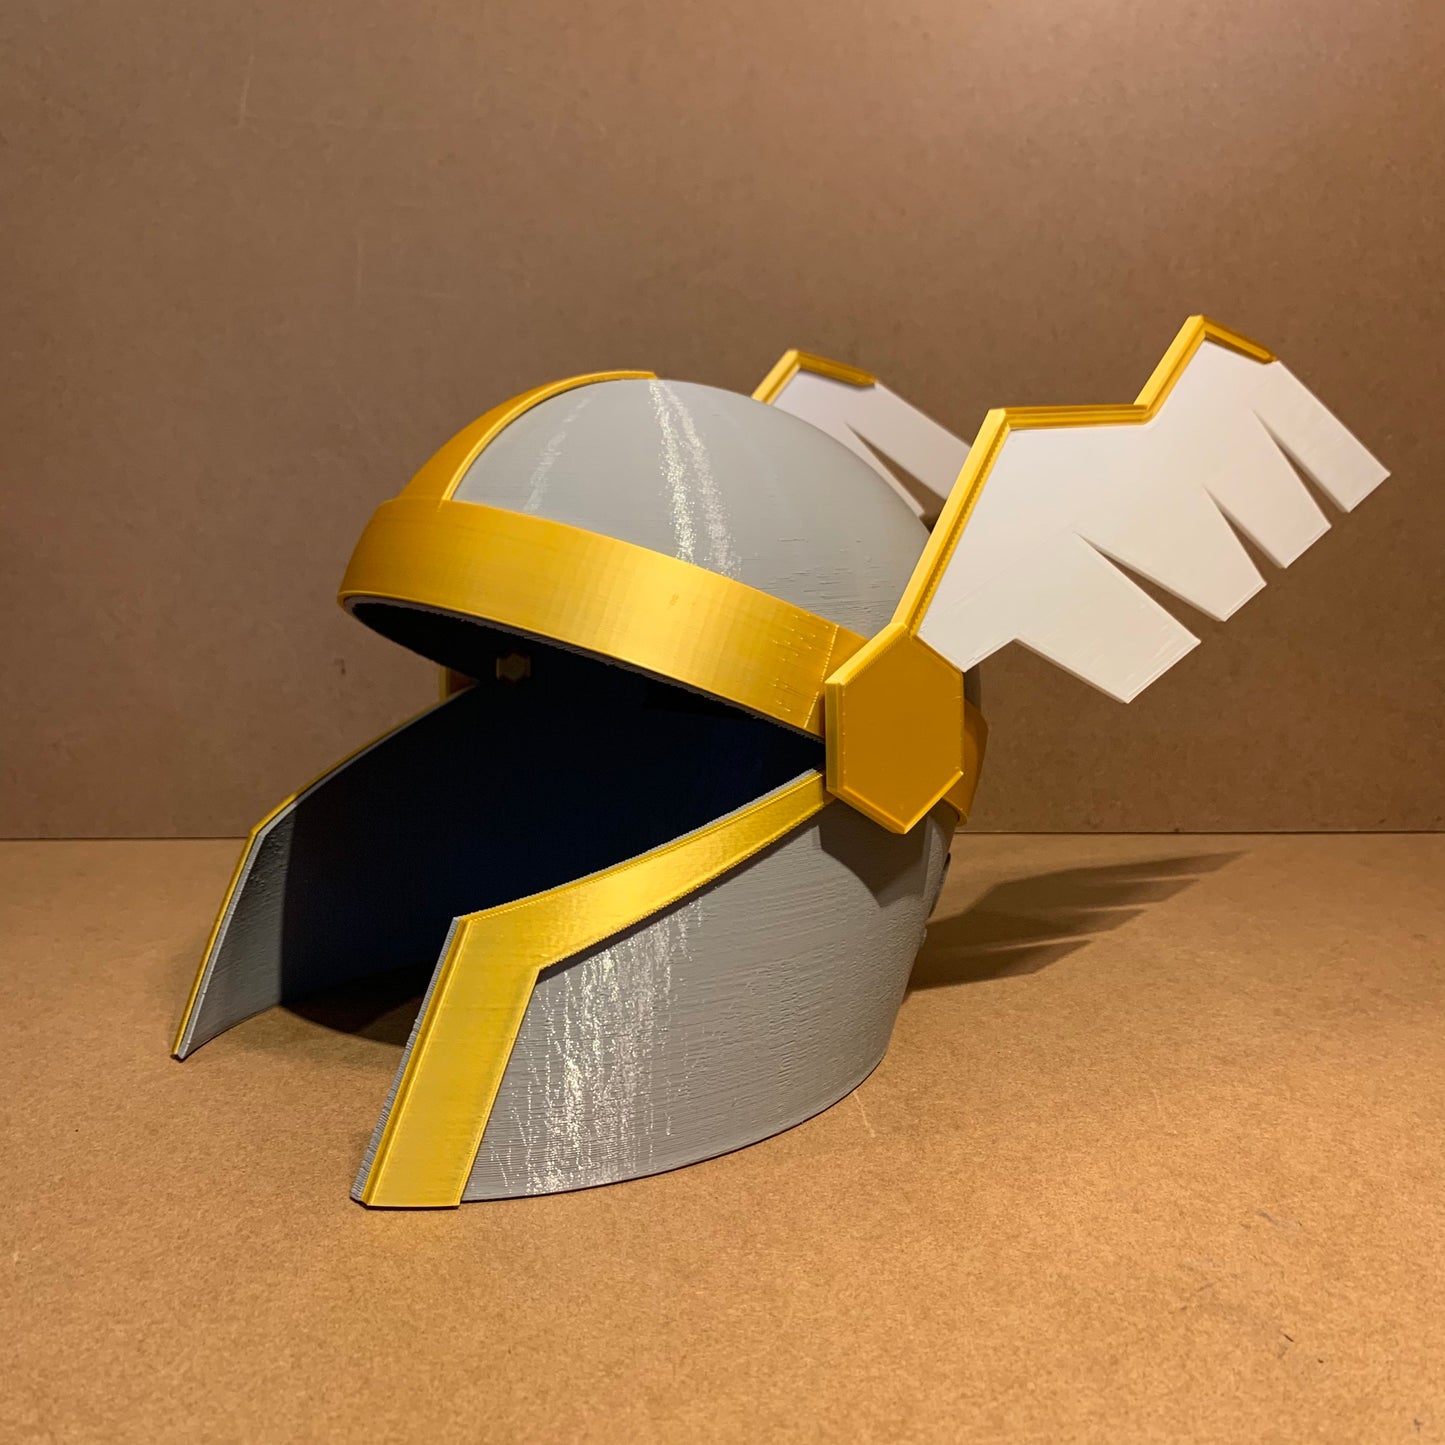 HELM of NEITIZNOT / OSRS Style Wearable Helmet / Fan Art Based on RuneScape Game / Gamer Boyfriend Gift